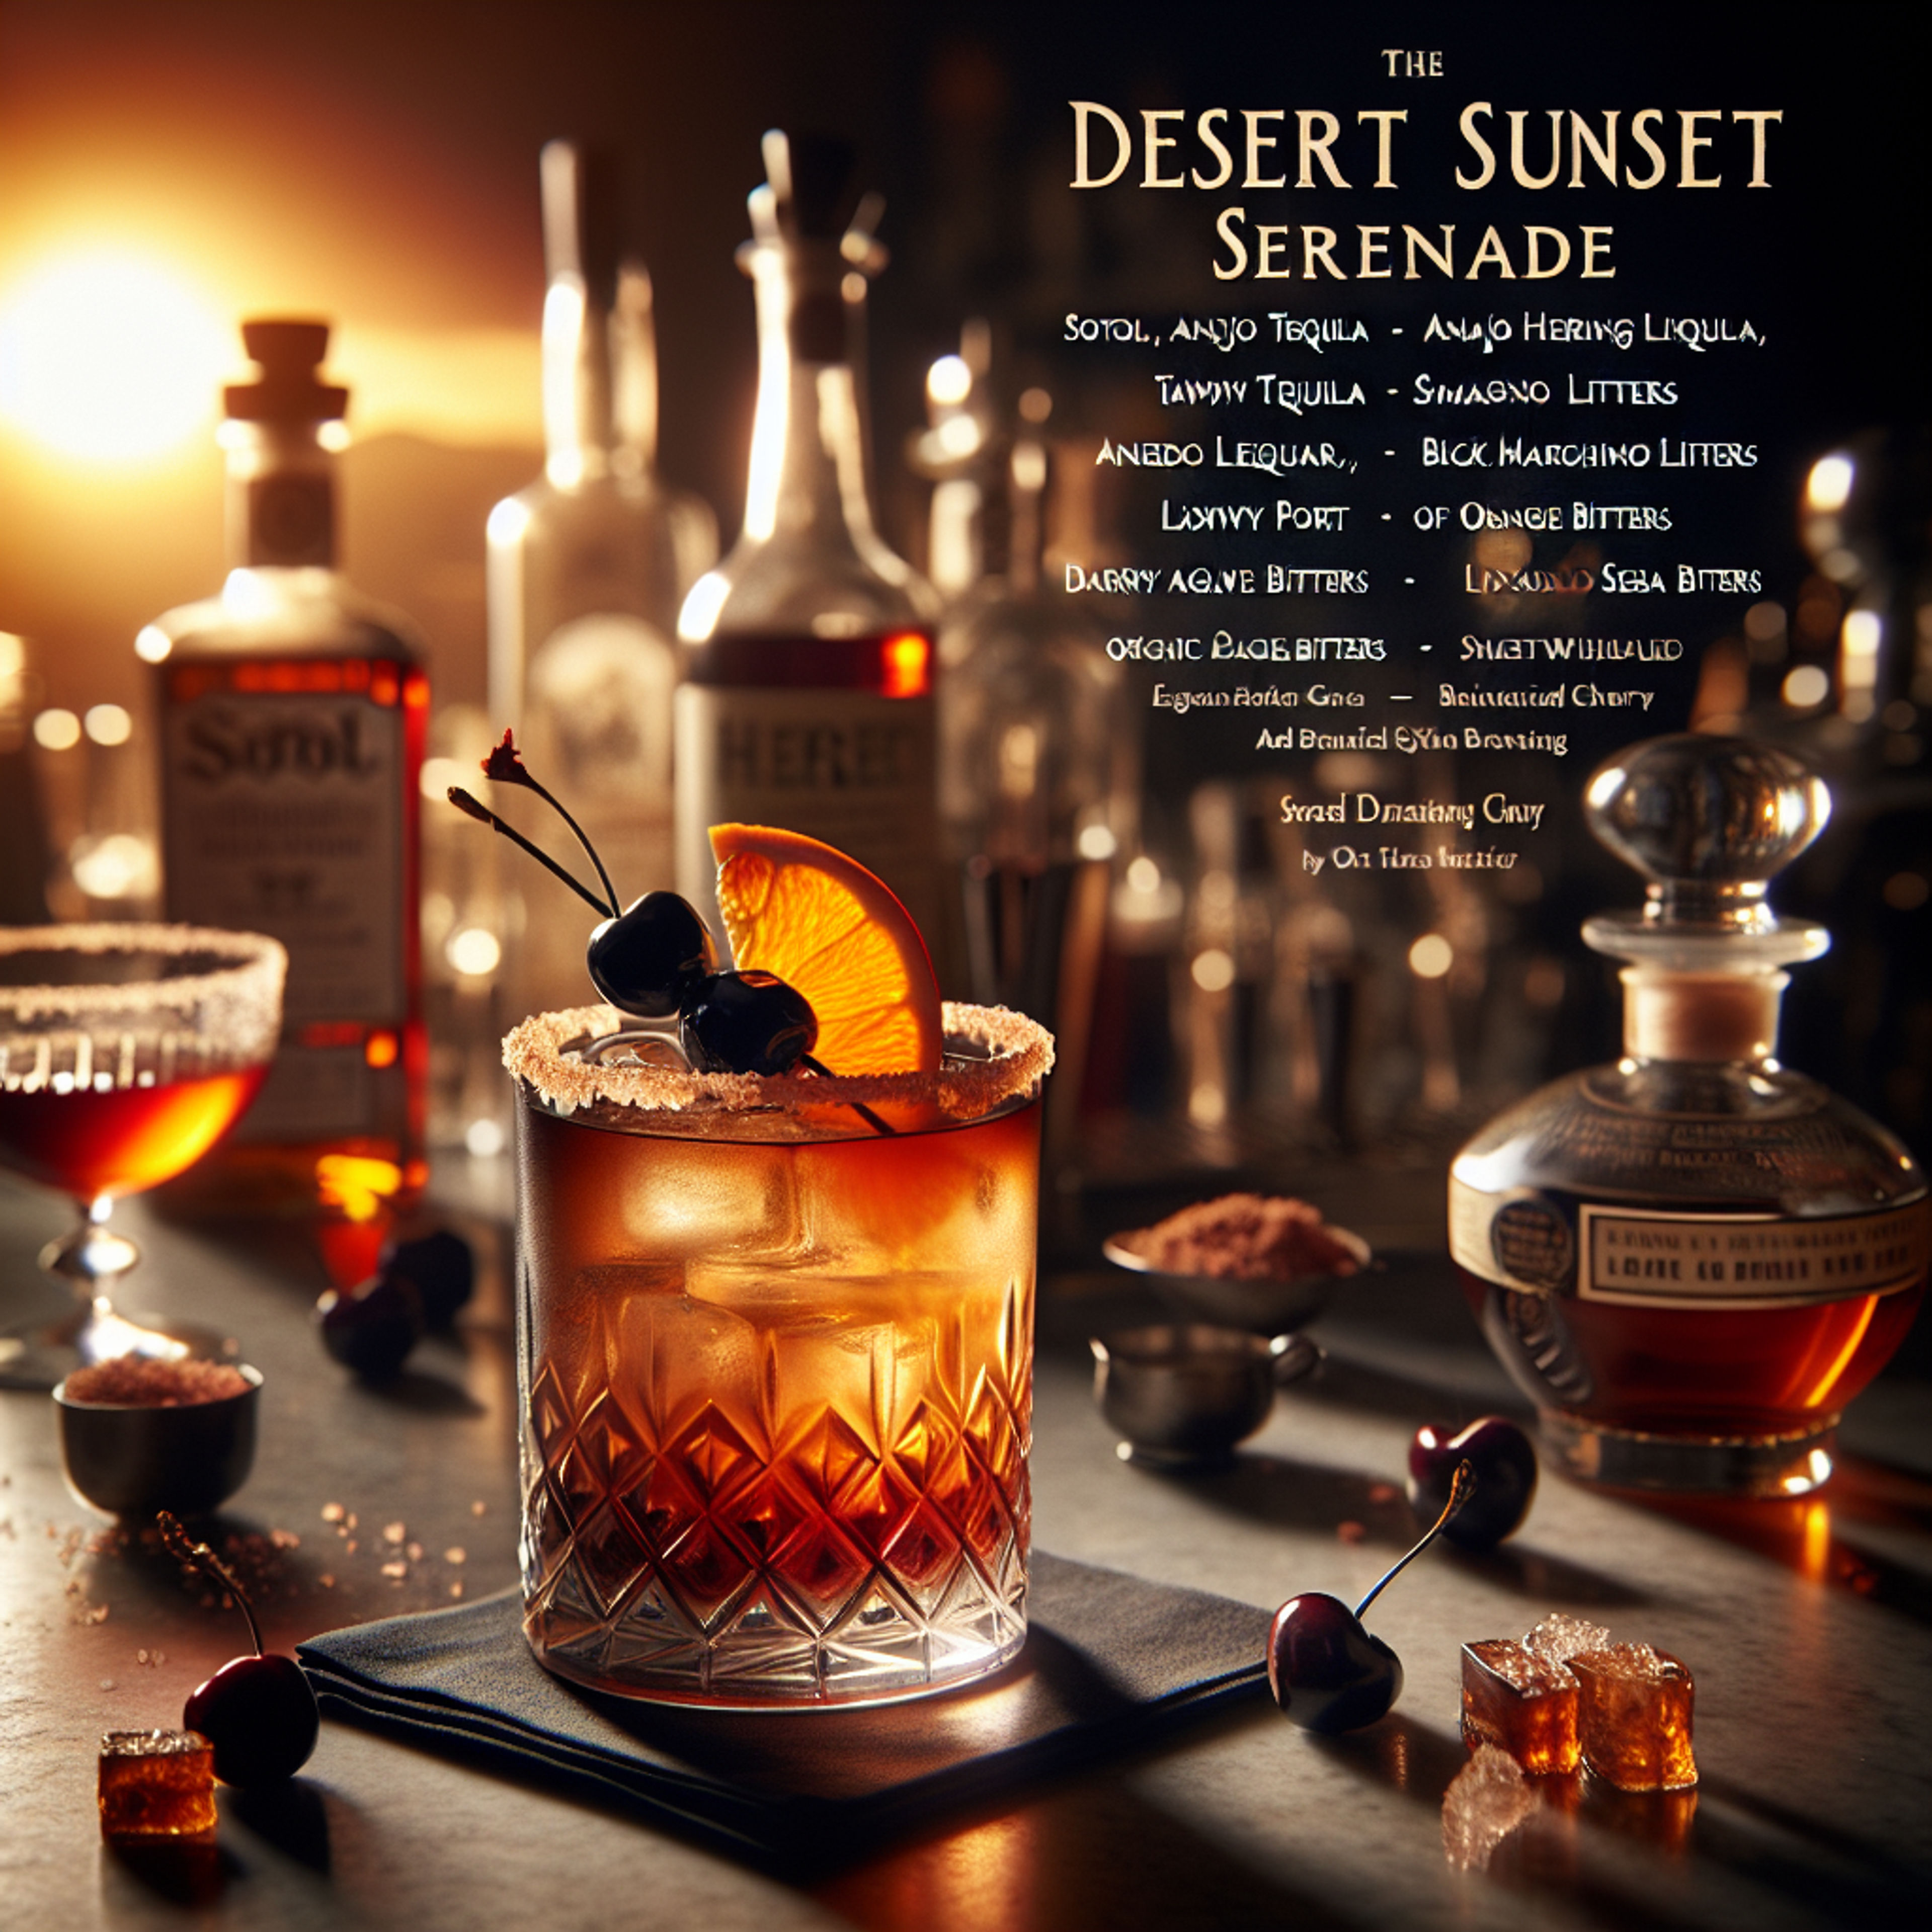 Desert Sunset Serenade